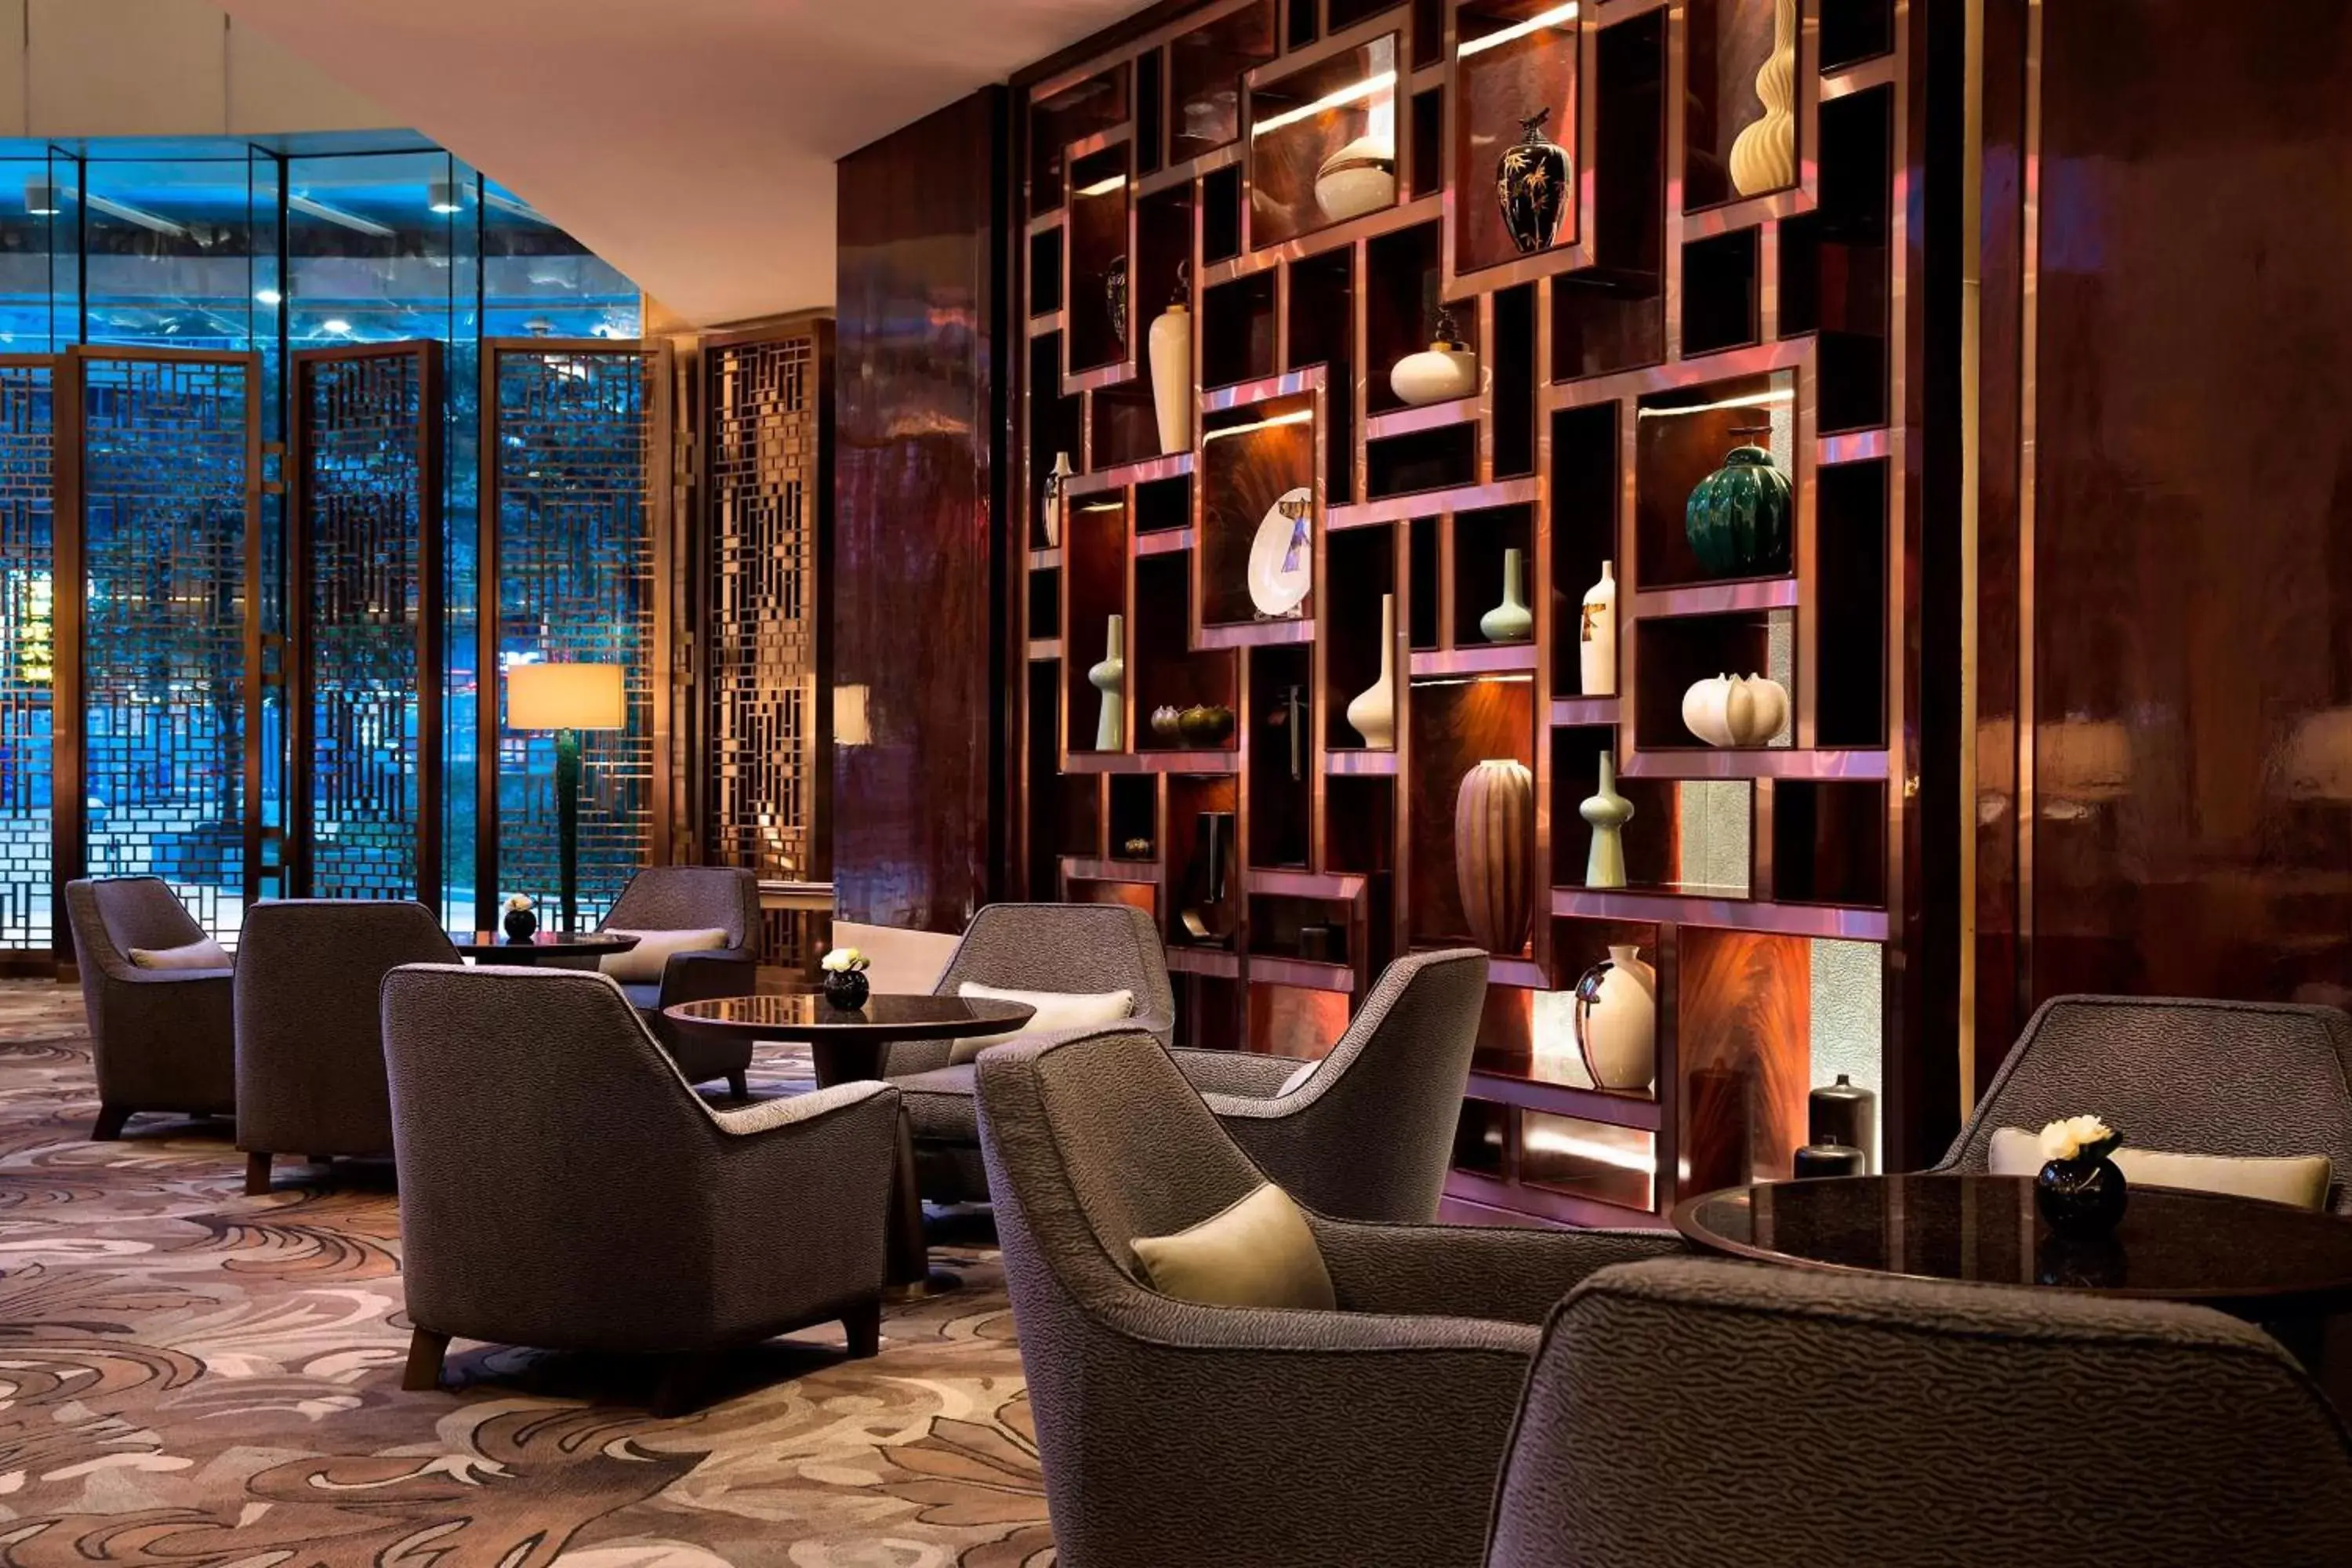 Lobby or reception in JW Marriott Hotel Chongqing